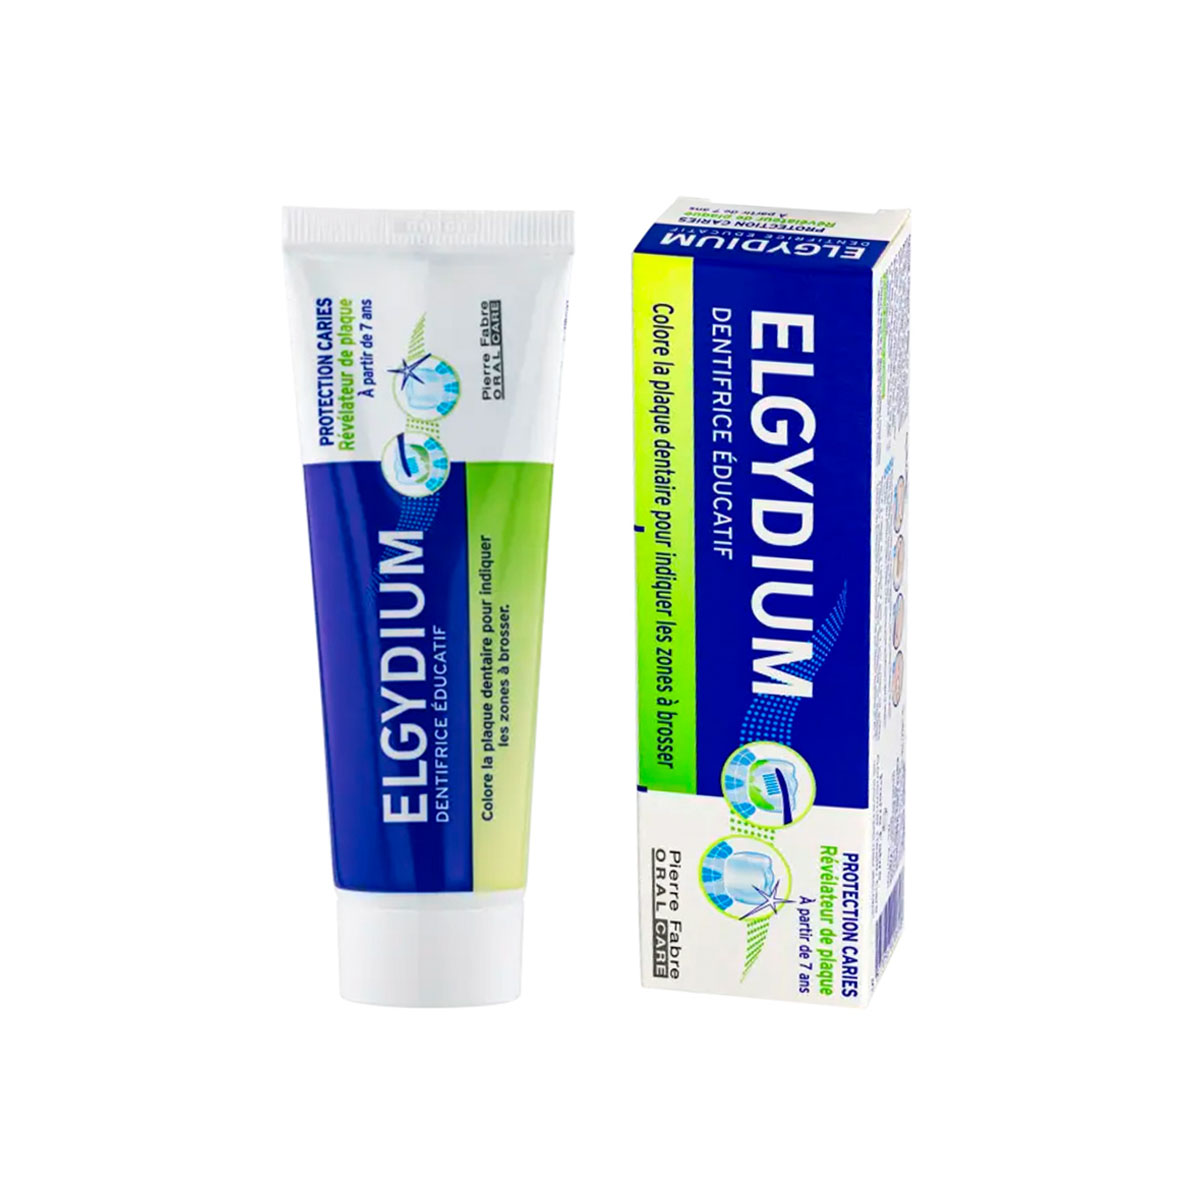 Зубная паста Эльгидиум Plaque-disclosing для взрослых и детей от 7 лет паста зубная с индикацией зубного налёта plaque disclosing elgydium эльгидиум 50мл